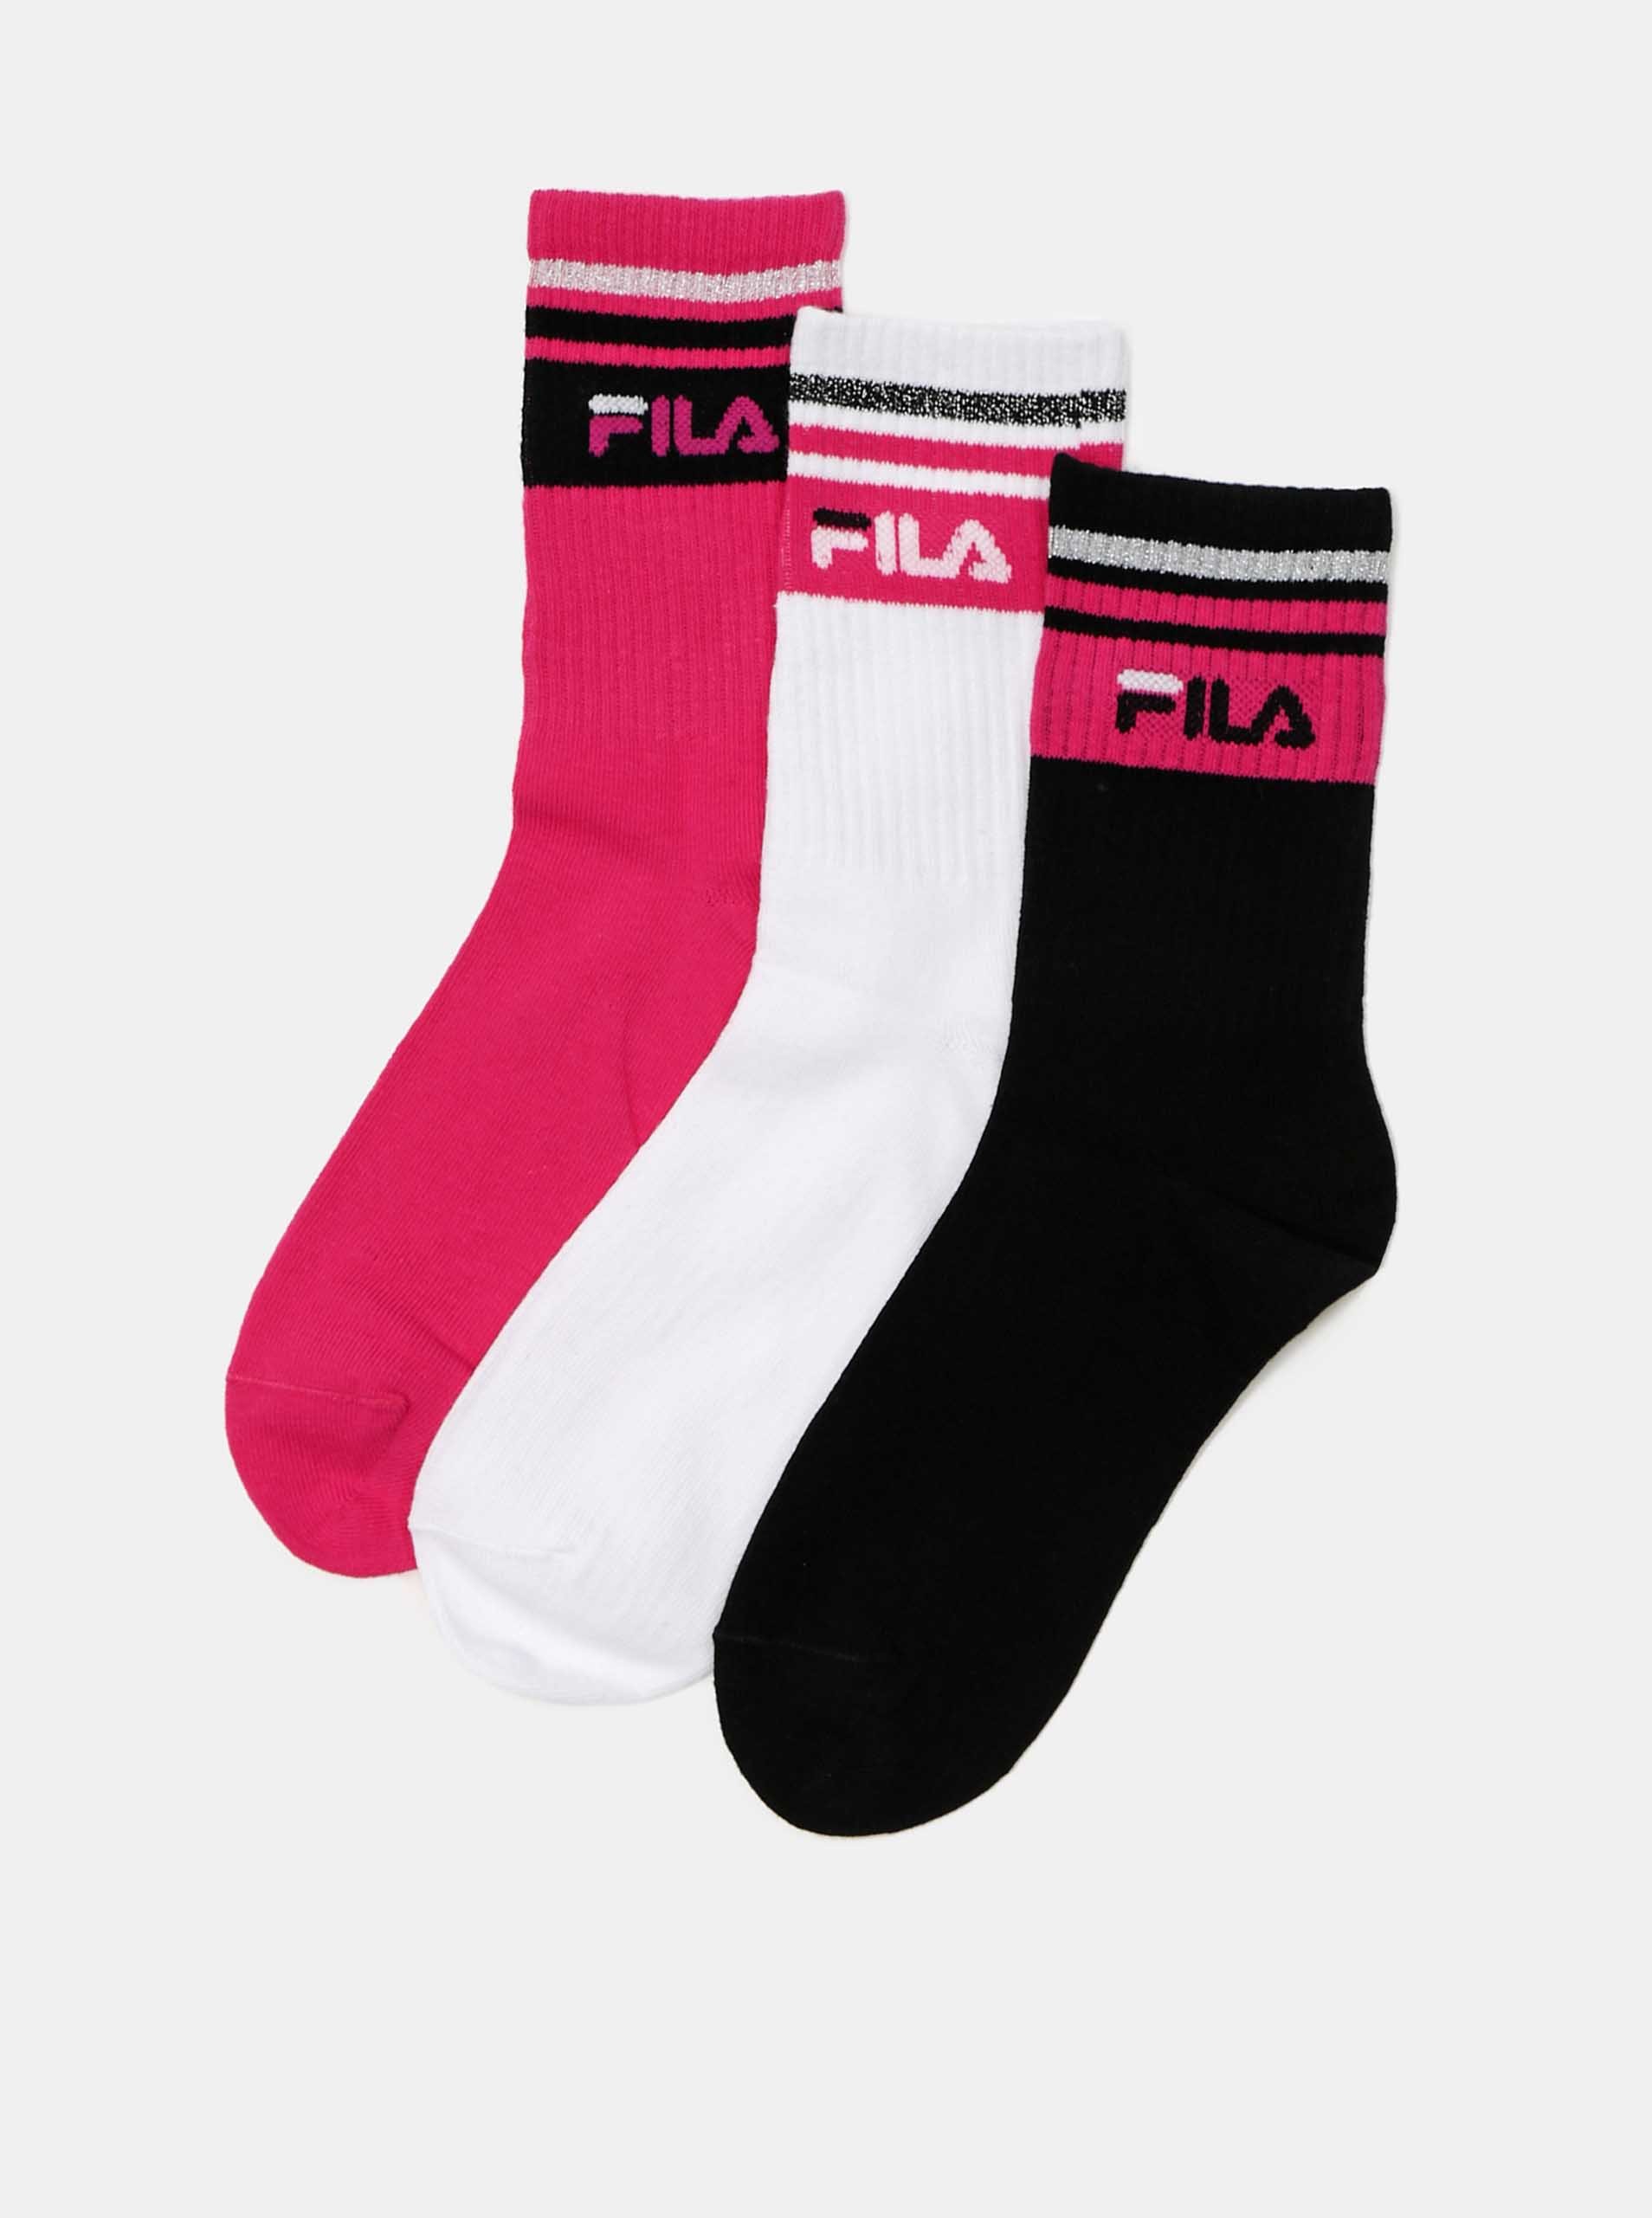 Fotografie Sada tří párů dámských ponožek v černé a růžové barvě FILA